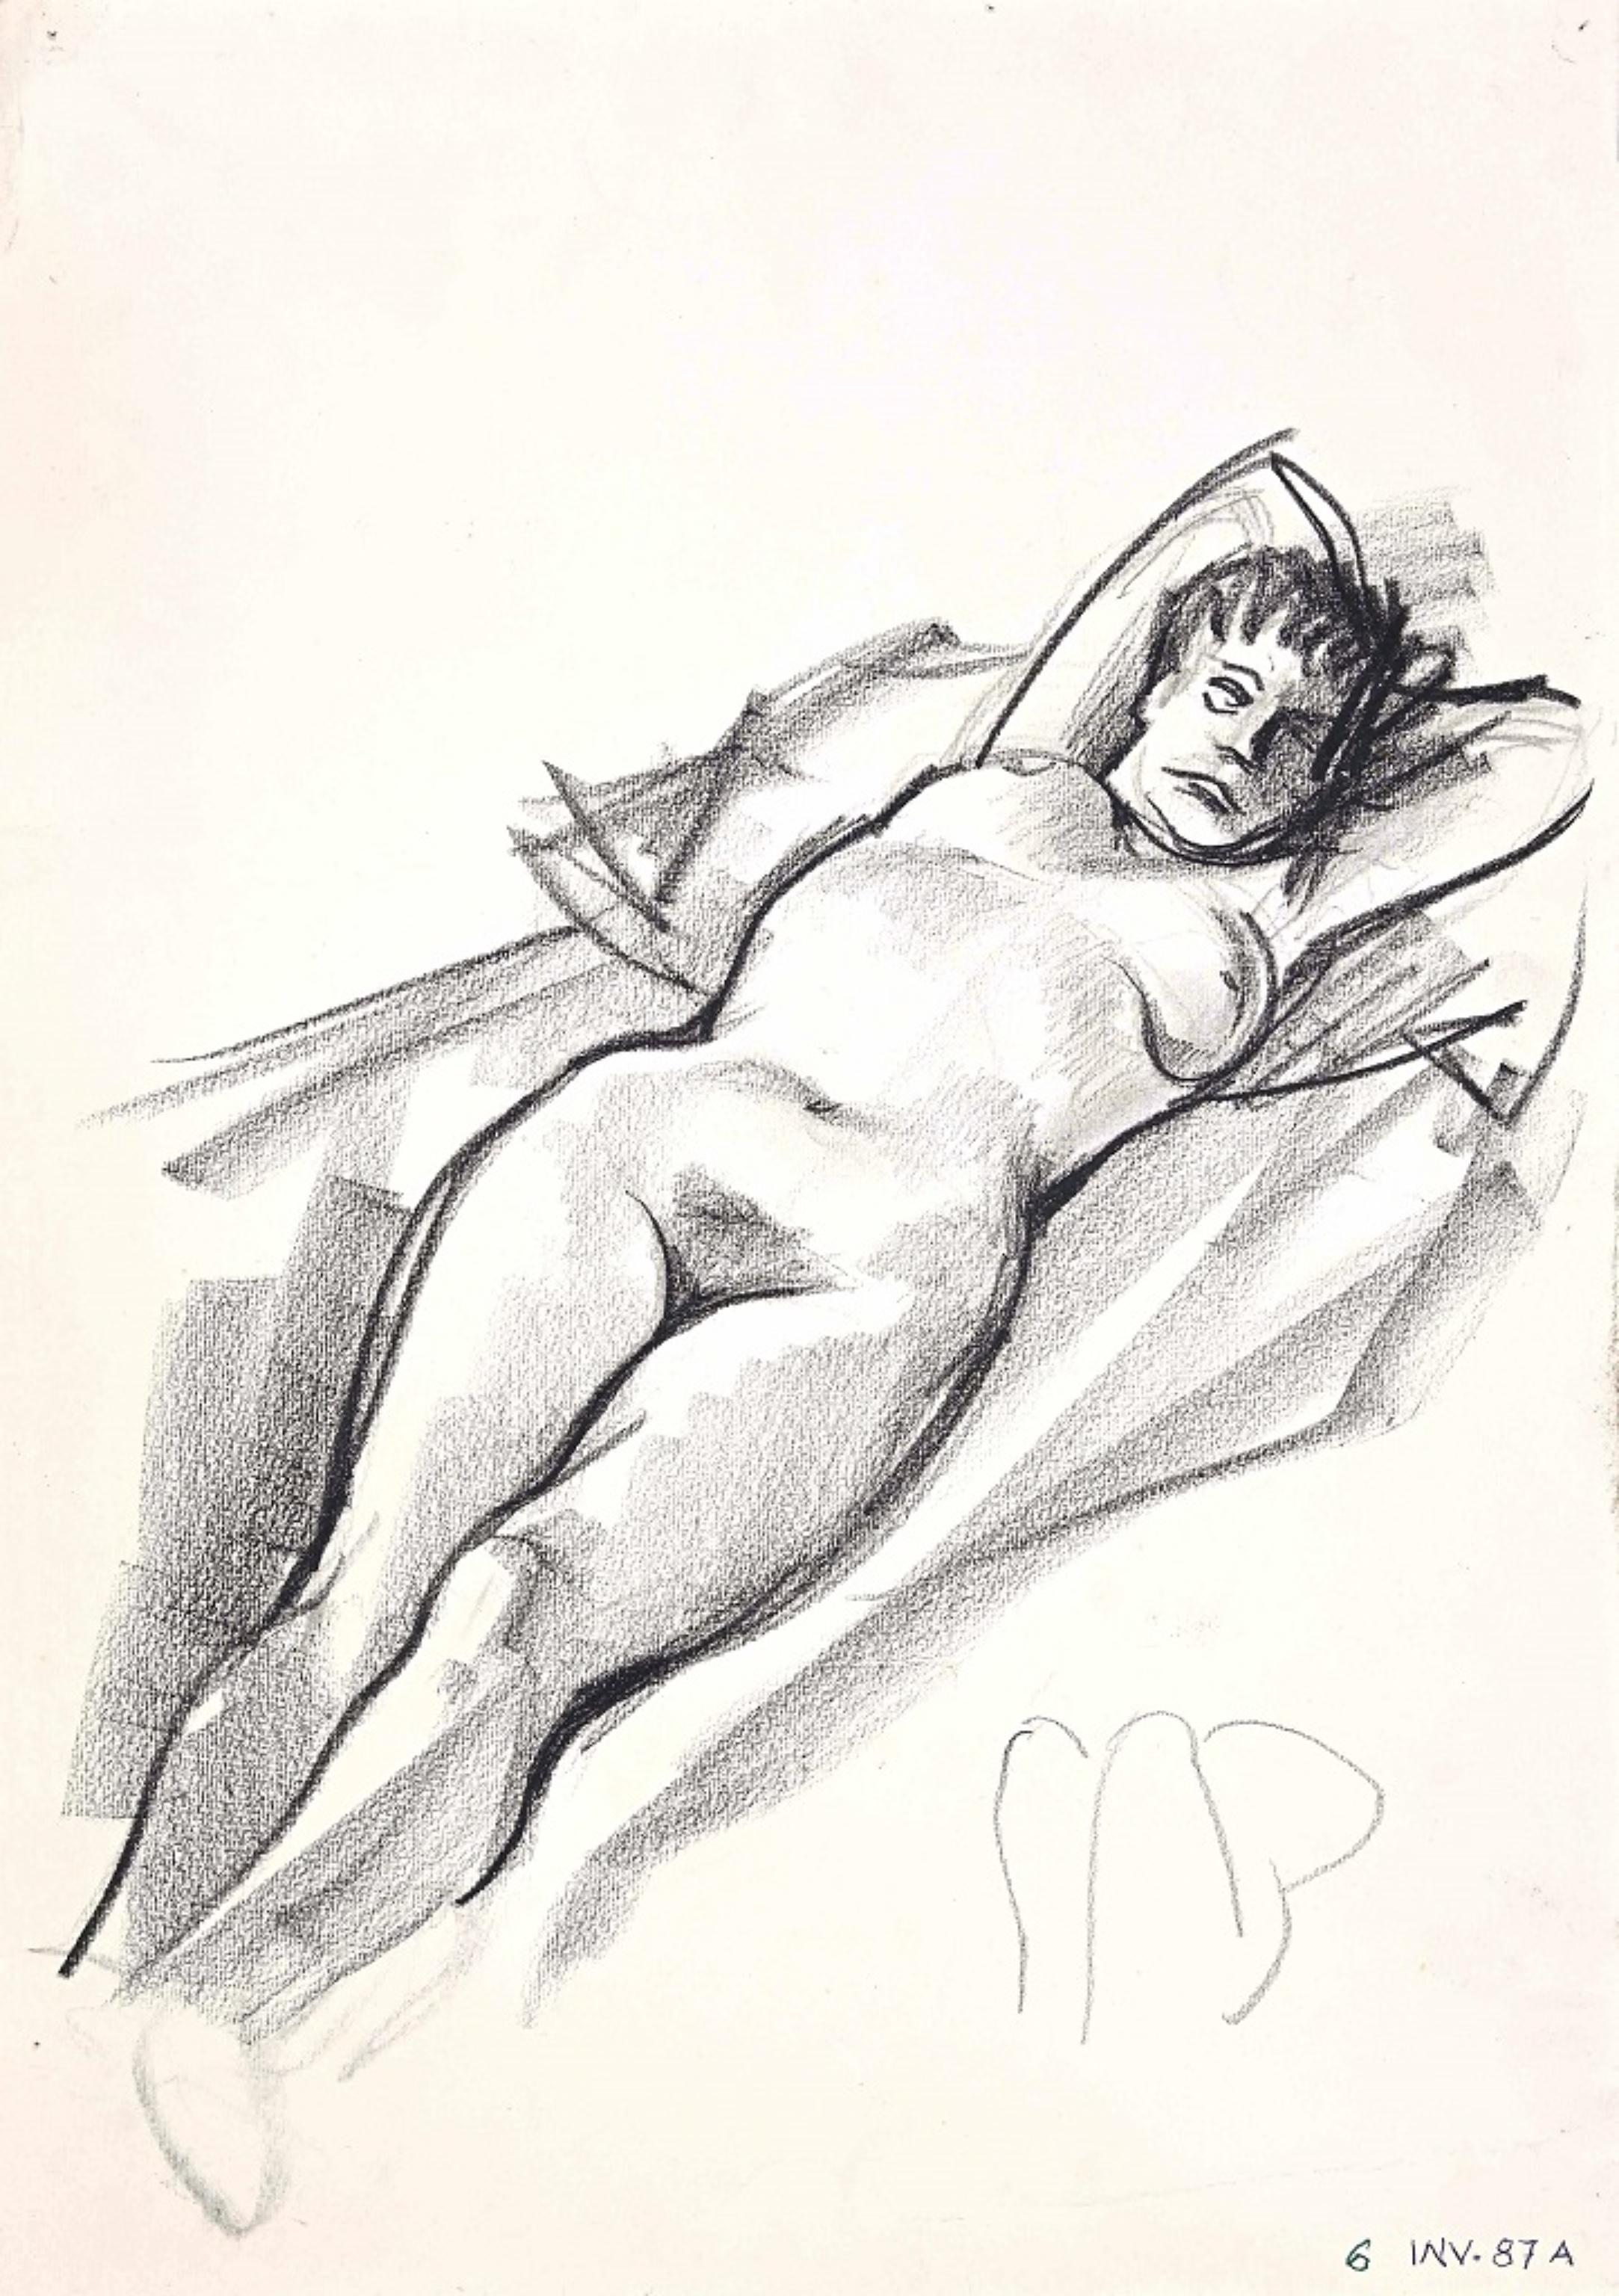 Leo Guida Nude – Aktzeichnung an Holzkohle – weiblicher Akt – 1970er Jahre